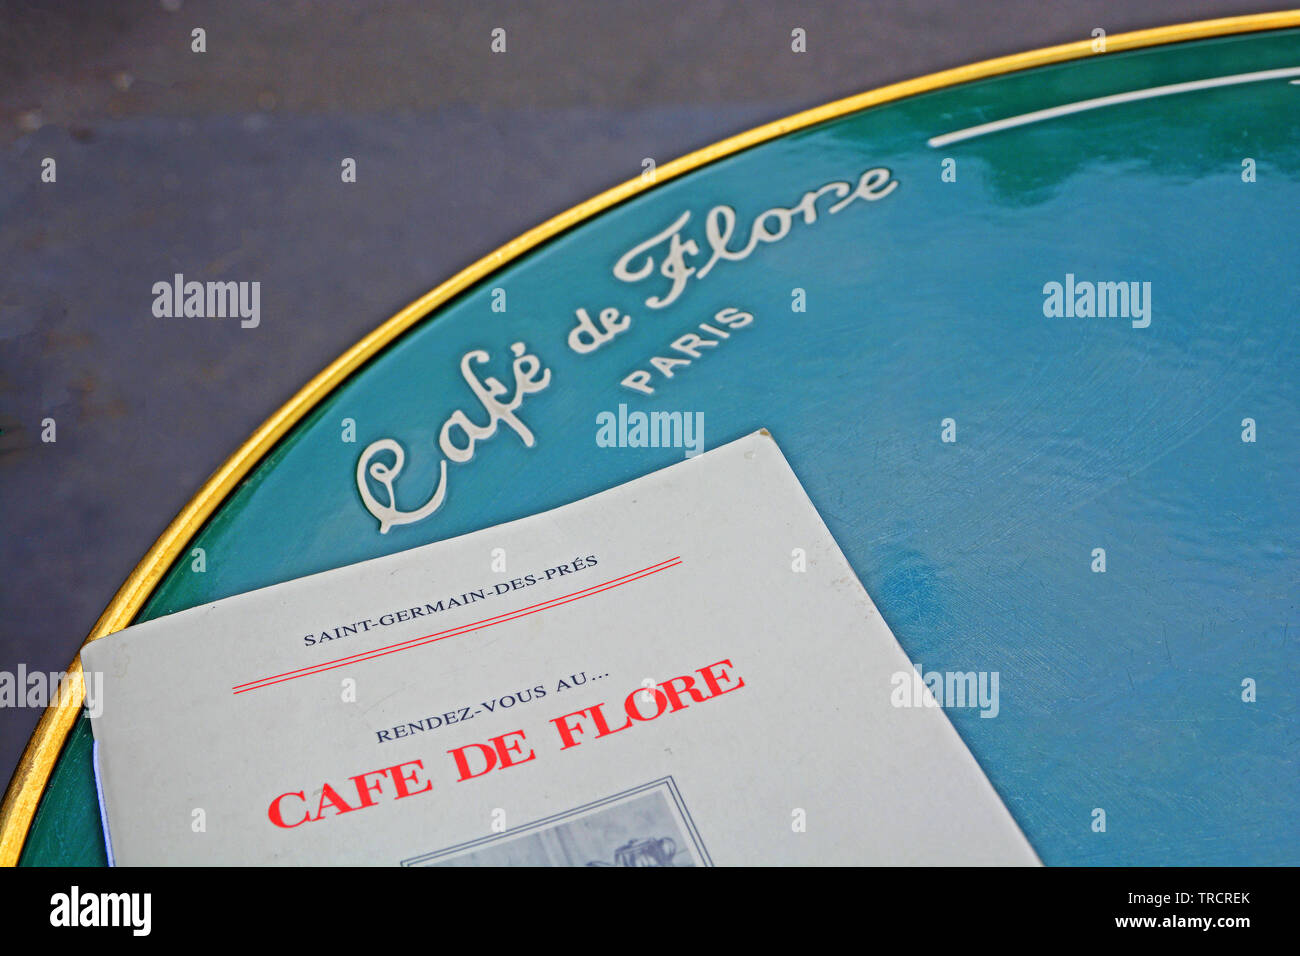 Café de Flore, Saint-Germain-des-Près, Paris, France Stock Photo